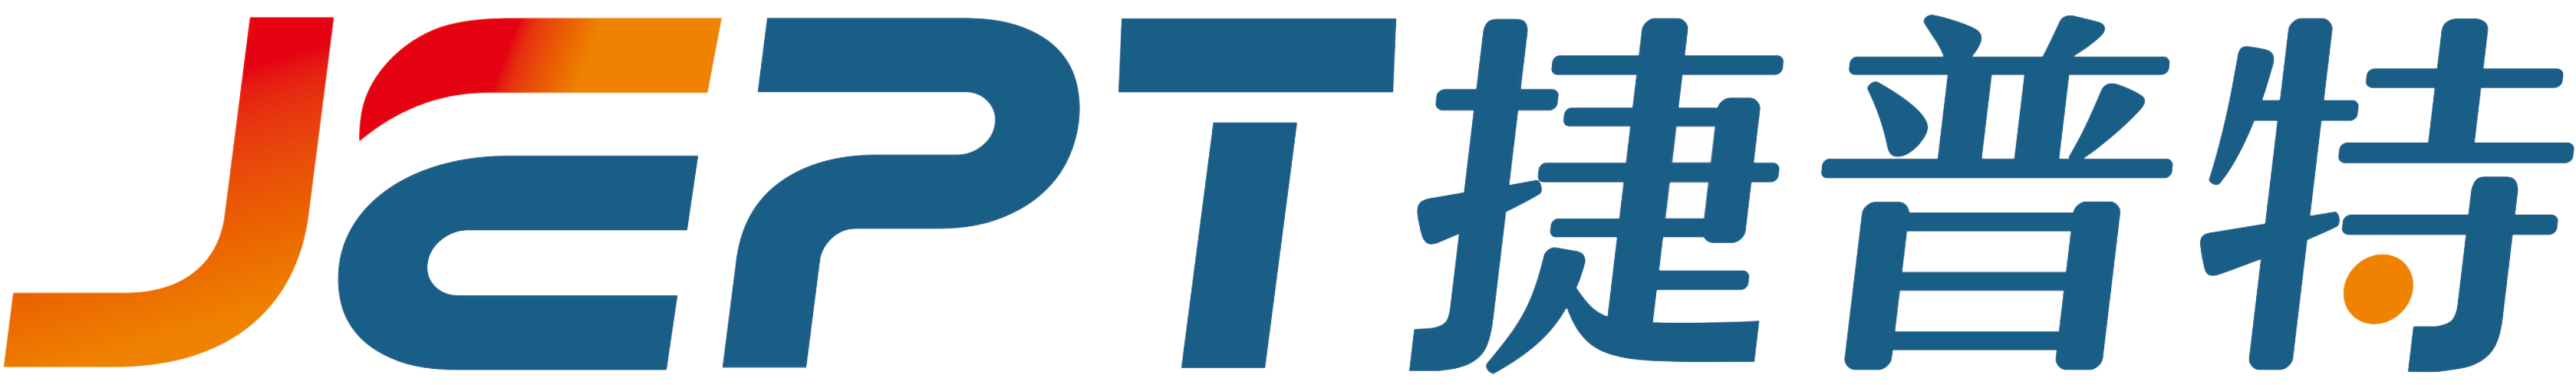 logo--JPET